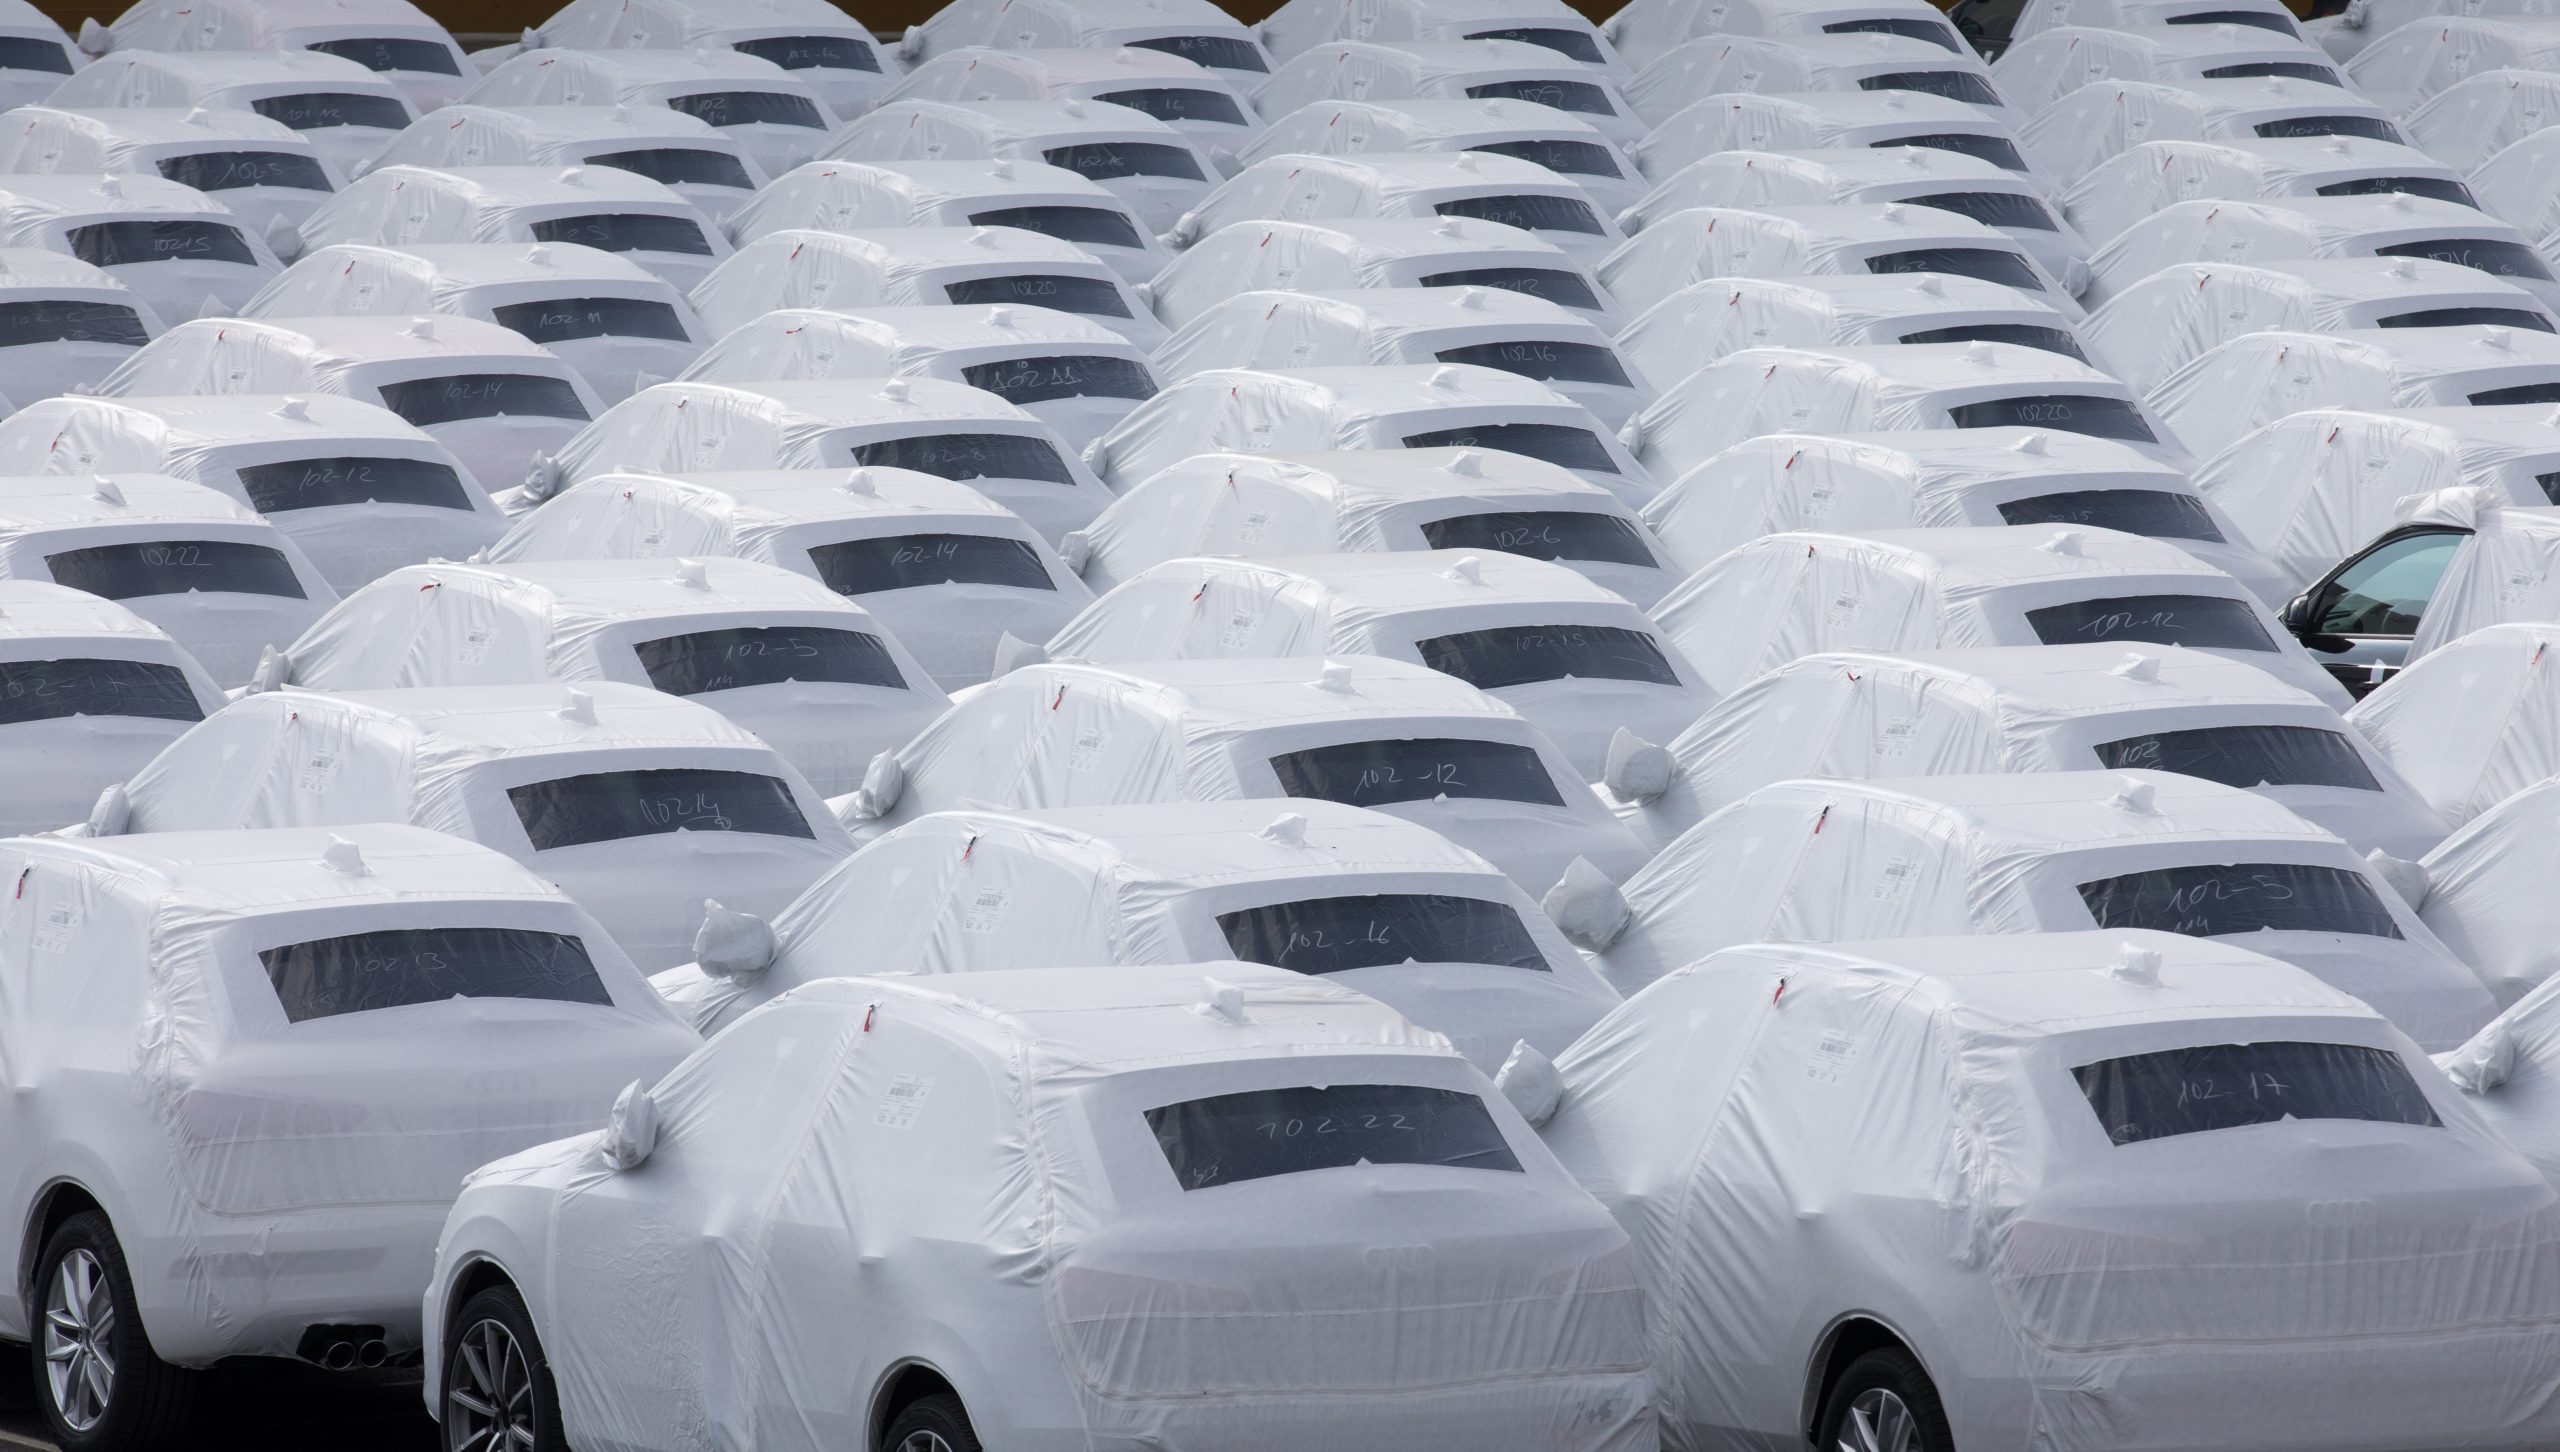 Neuwagen von VW stehen auf einem Parkplatz (Symbolbild).